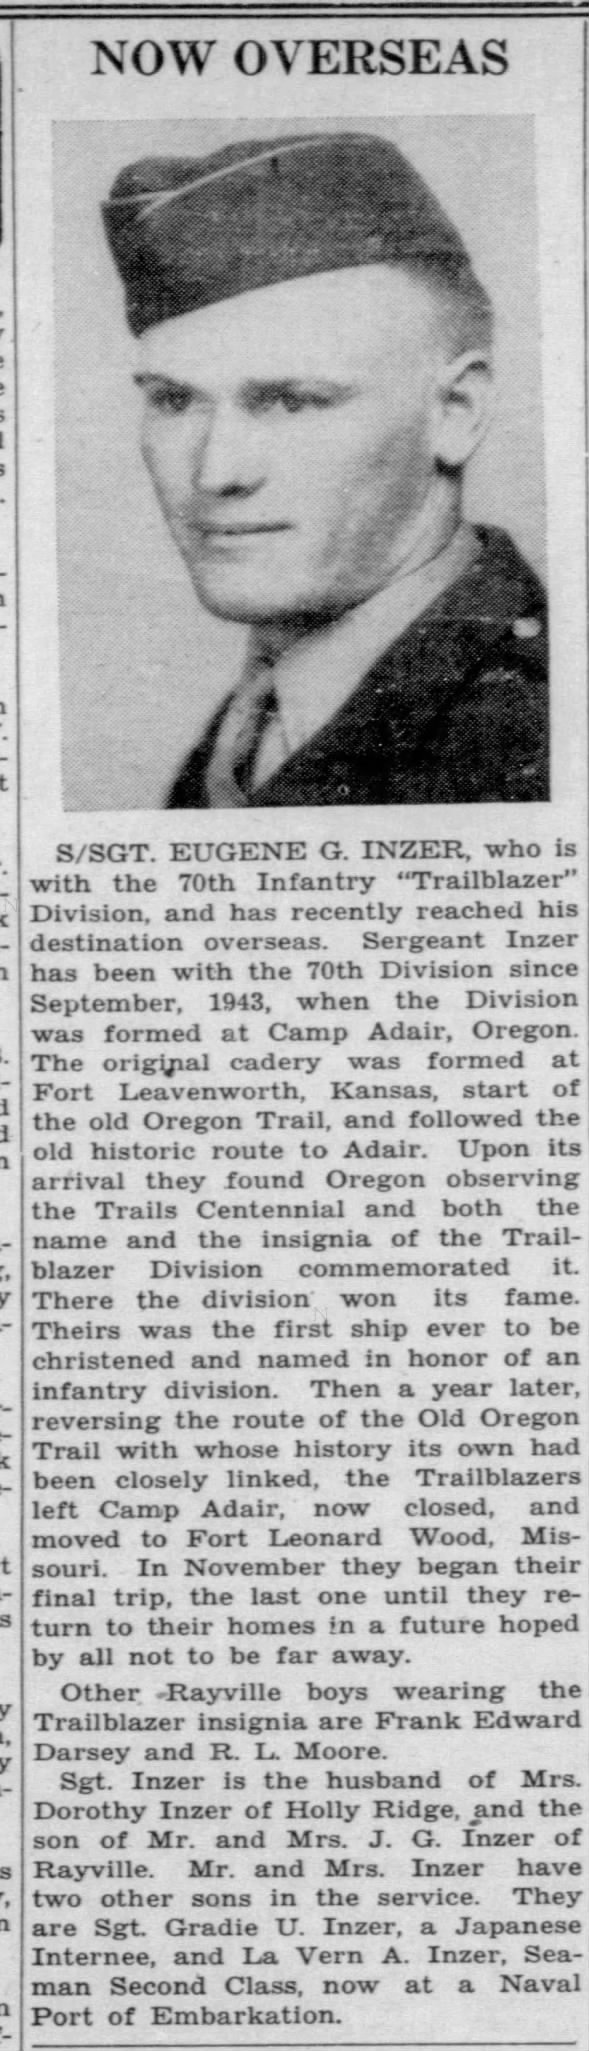 S/Sgt. Eugene Inzer reaches destination